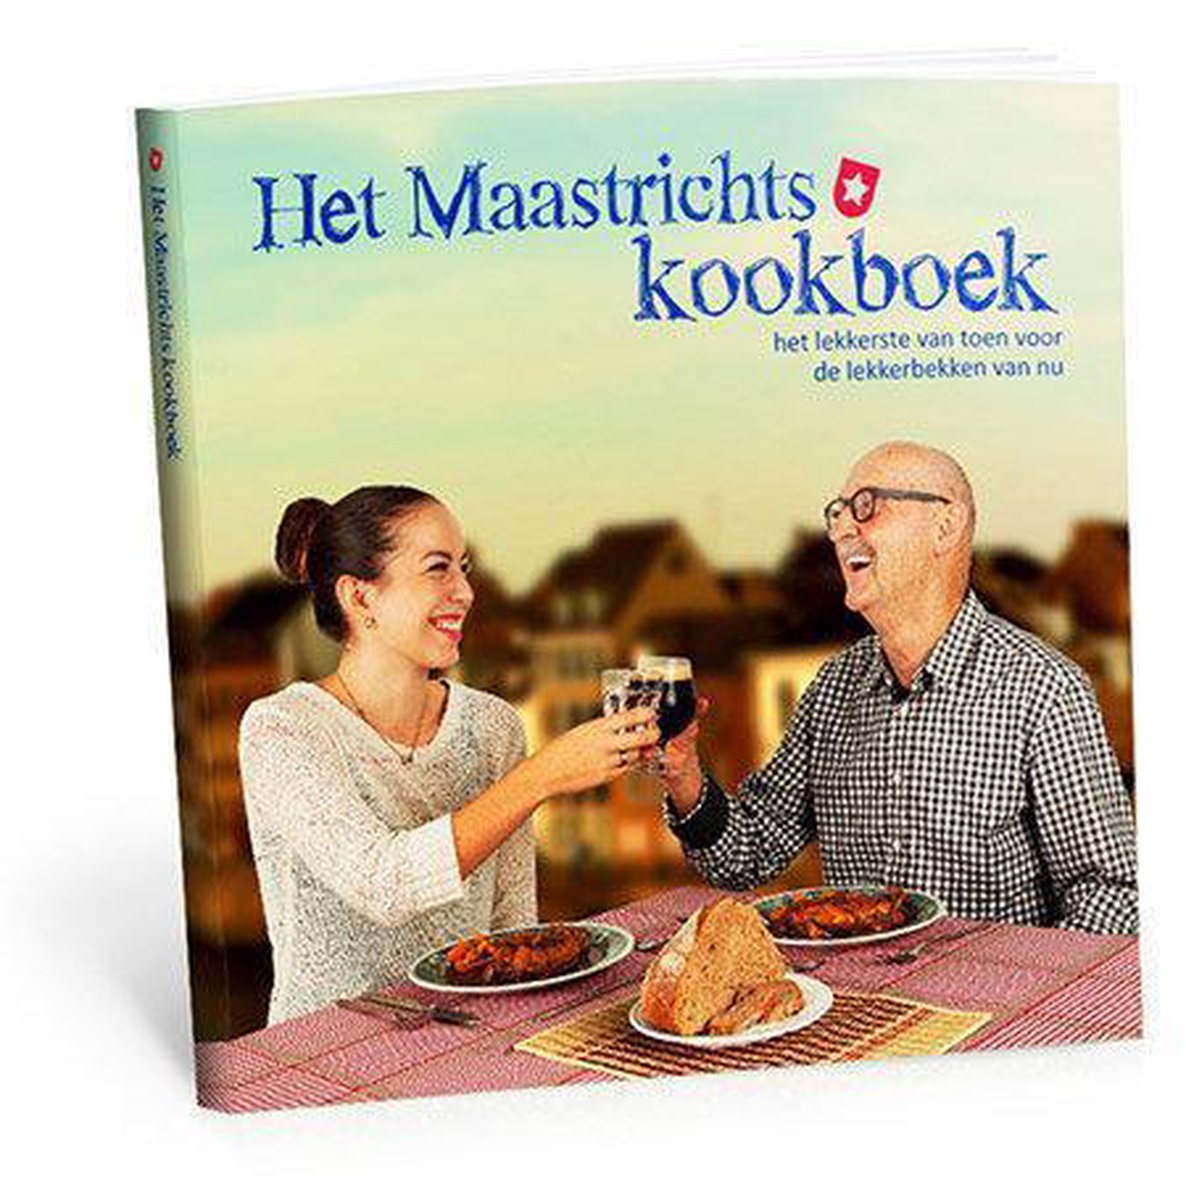 Het Maastrichts kookboek